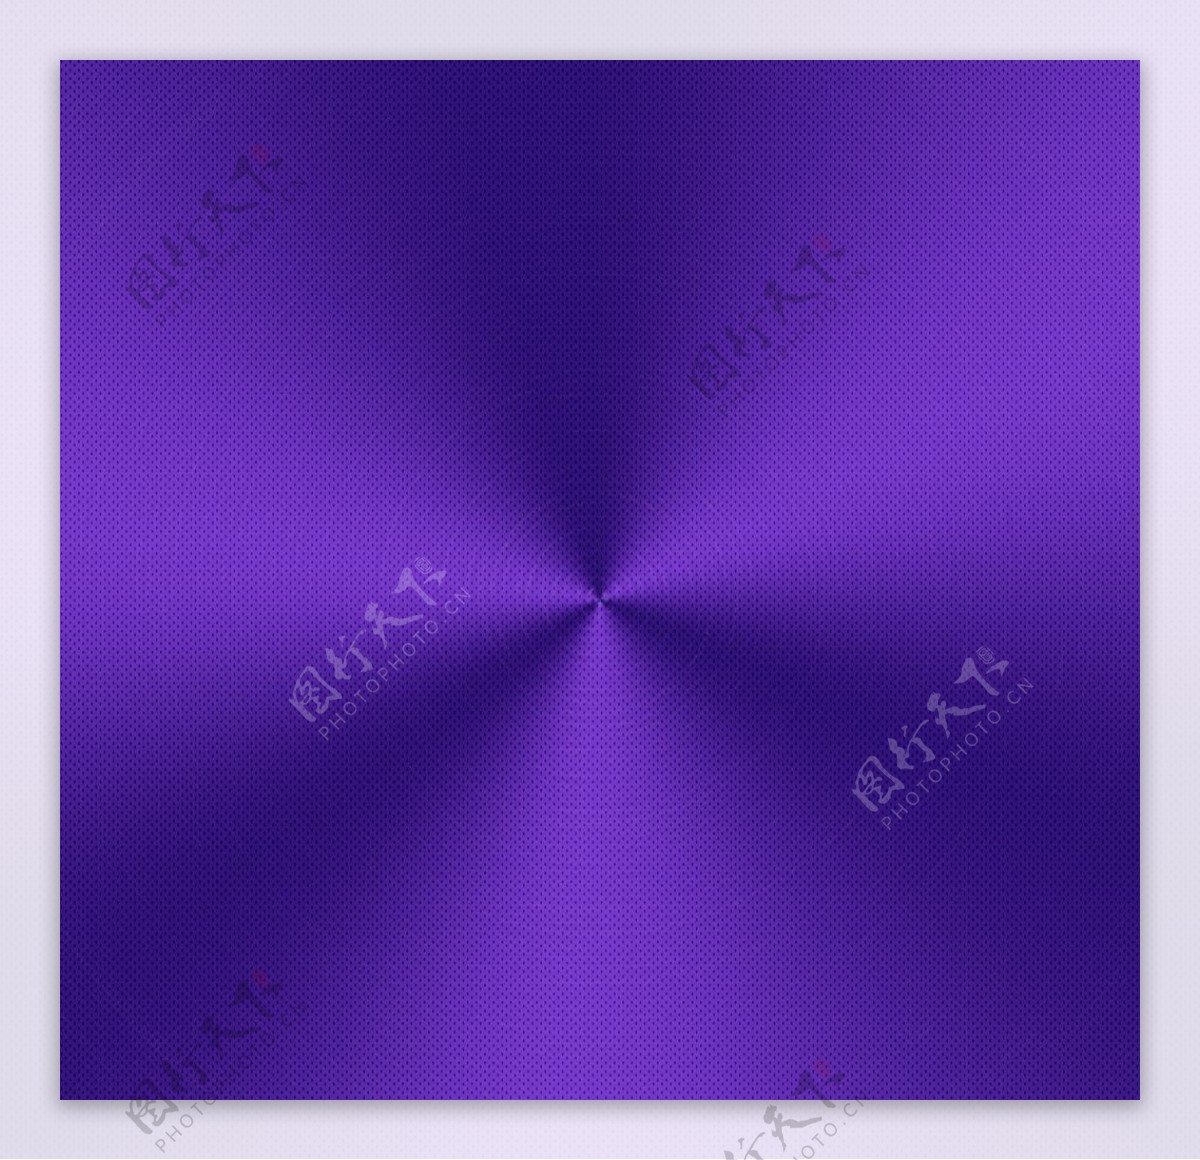 紫色金属背景